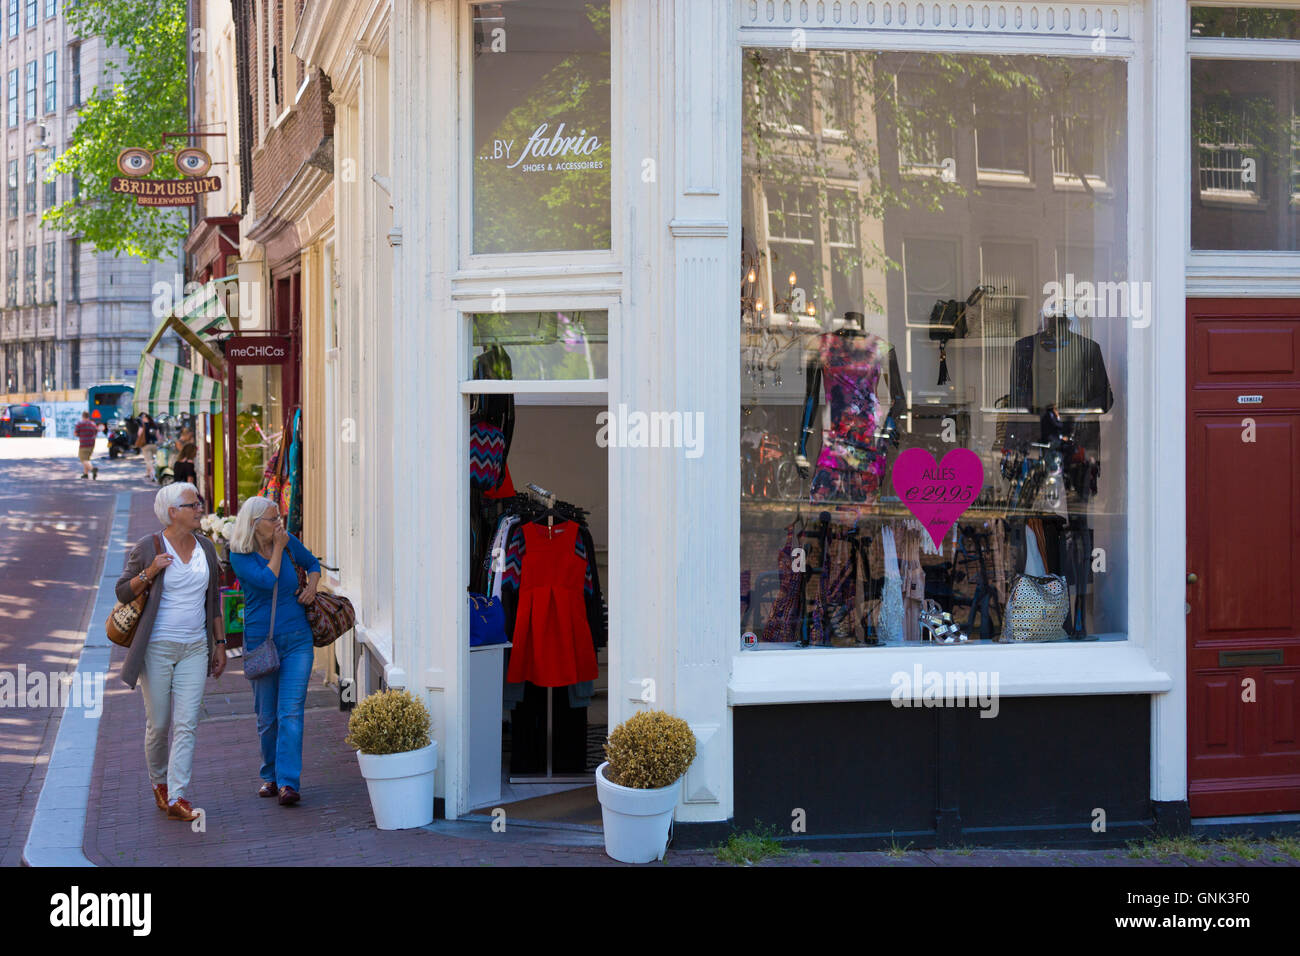 Schicke Damen Mode Shop im Huidenstraat in neun Straßen Einkaufsviertel, Amsterdam Stockfoto